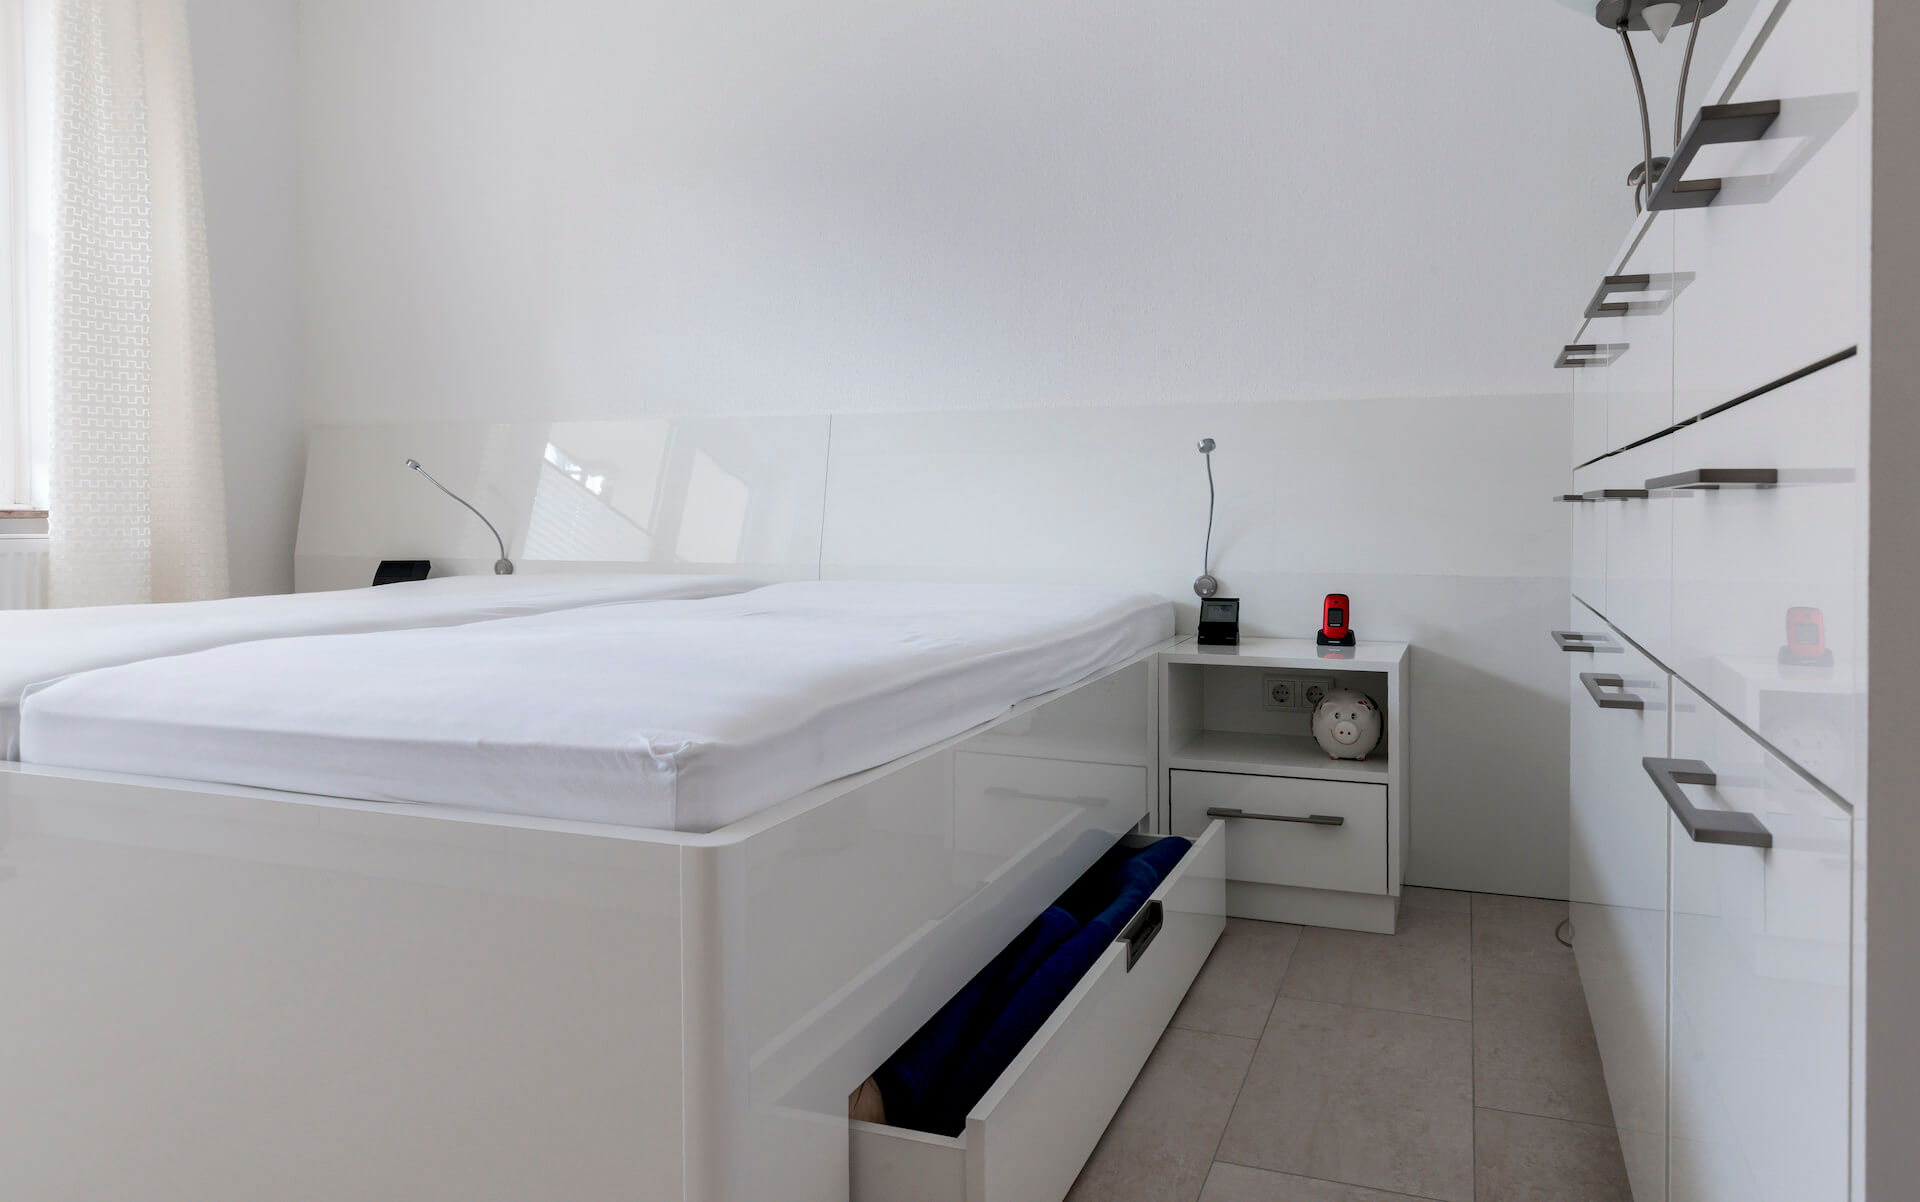 Schlafzimmer in hochglänzendem Weiß mit zusätzlichem Stauraum in den beiden Schubladenelementen unter dem Bett